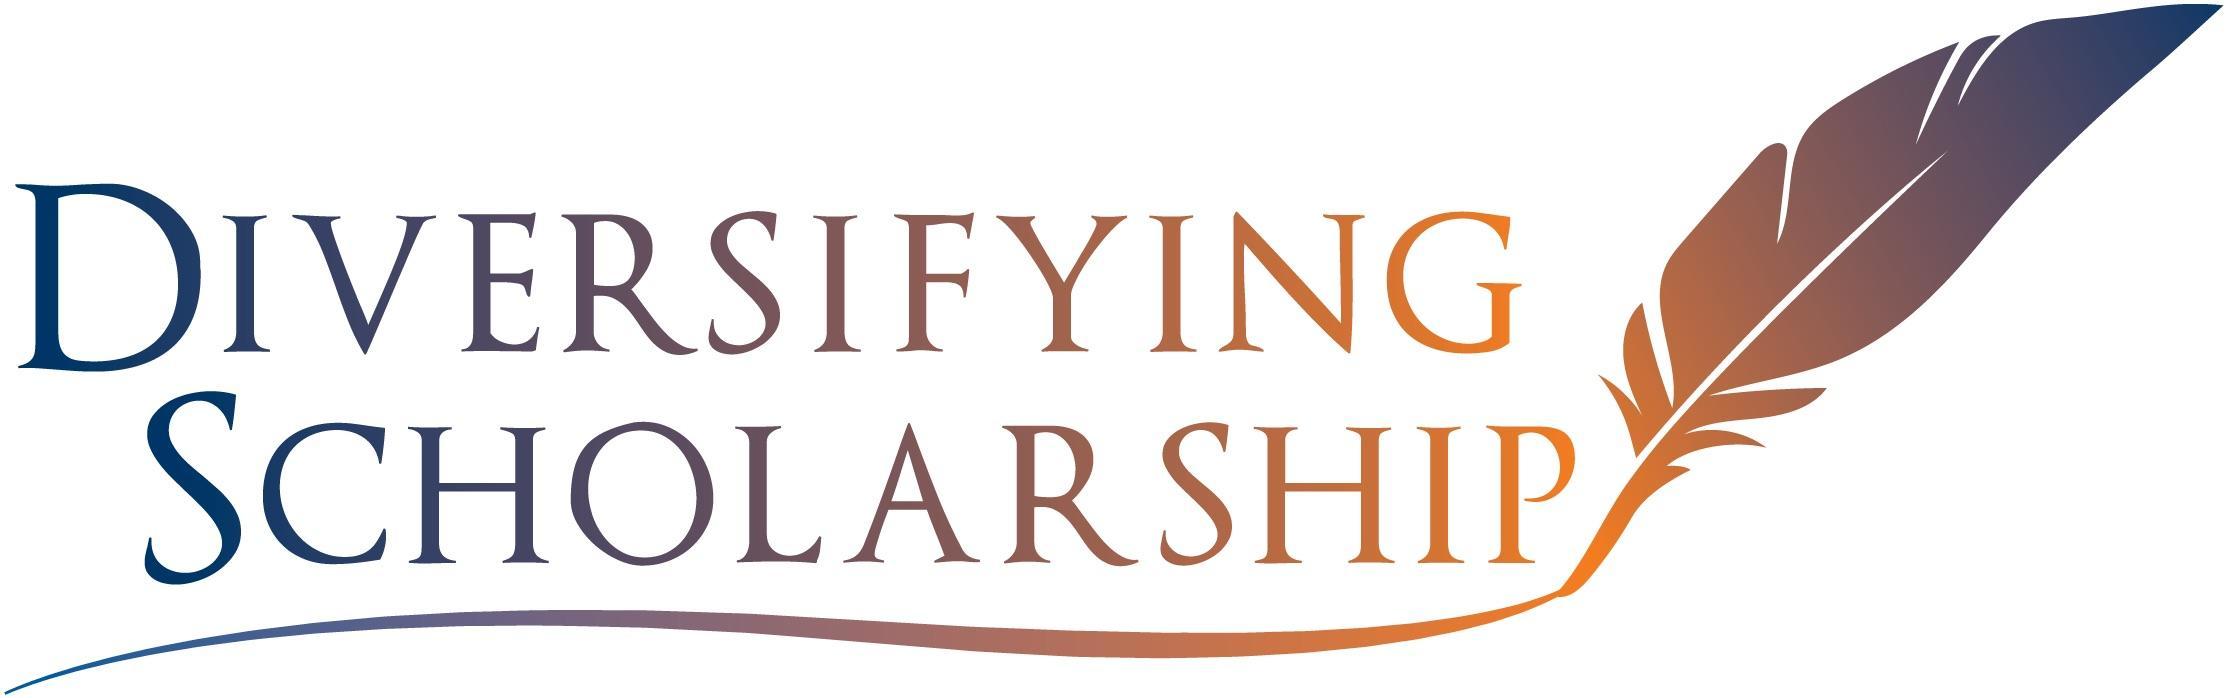 Diversifying Scholarship Logo